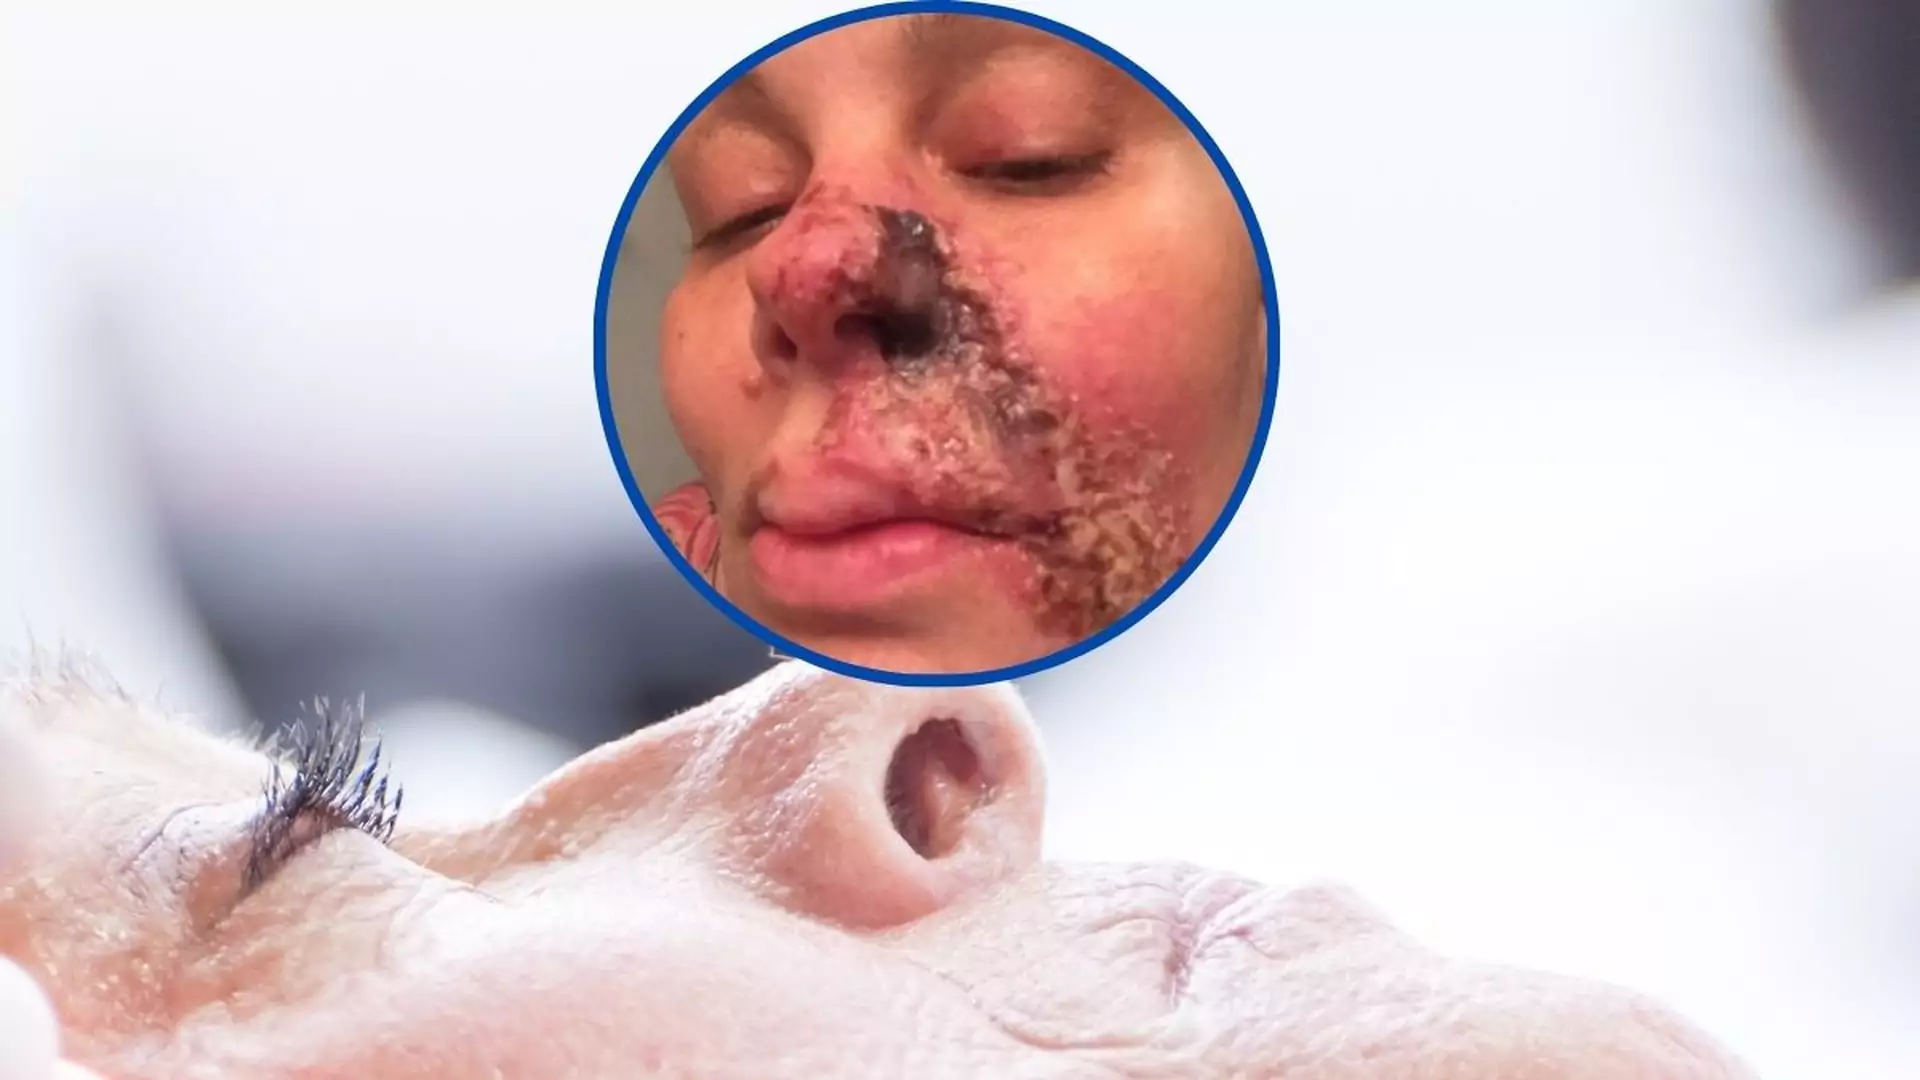 Po zabiegu upiększającym odpadła jej połowa nosa. "Moja twarz się rozpada"